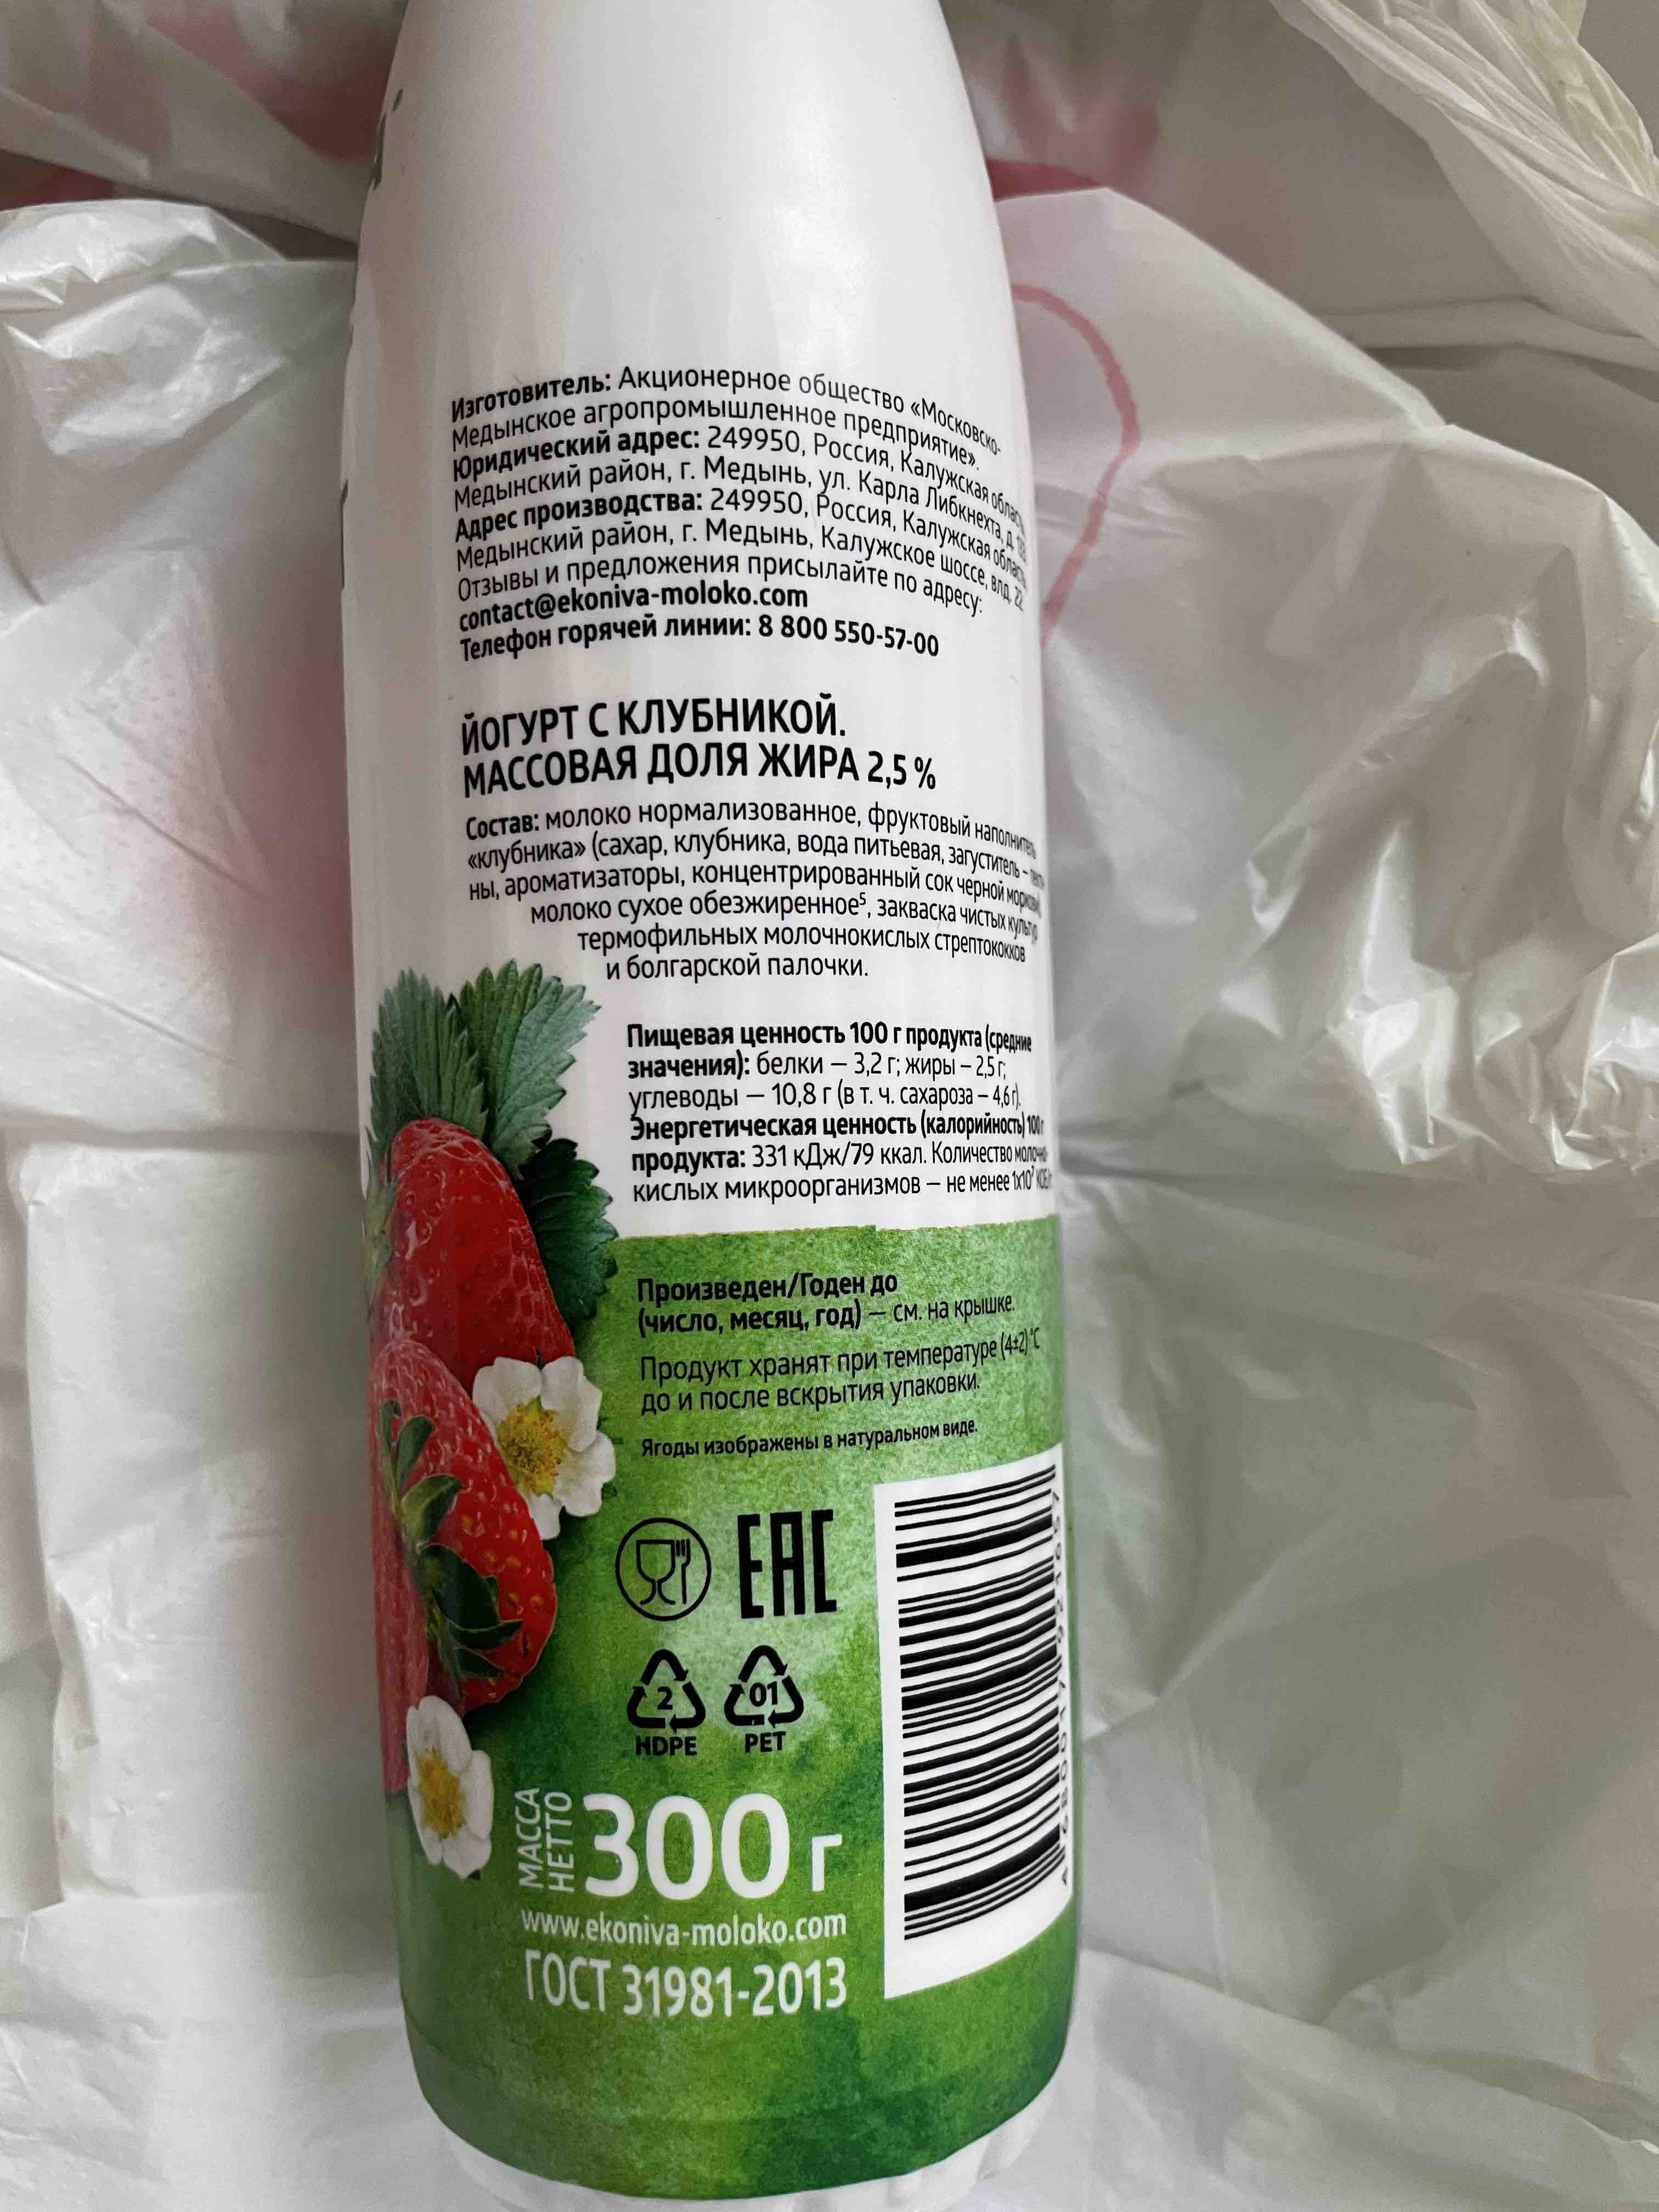 Питьевой йогурт ЭкоНива клубника 2,5% 300 г - отзывы покупателей намаркетплейсе Мегамаркет